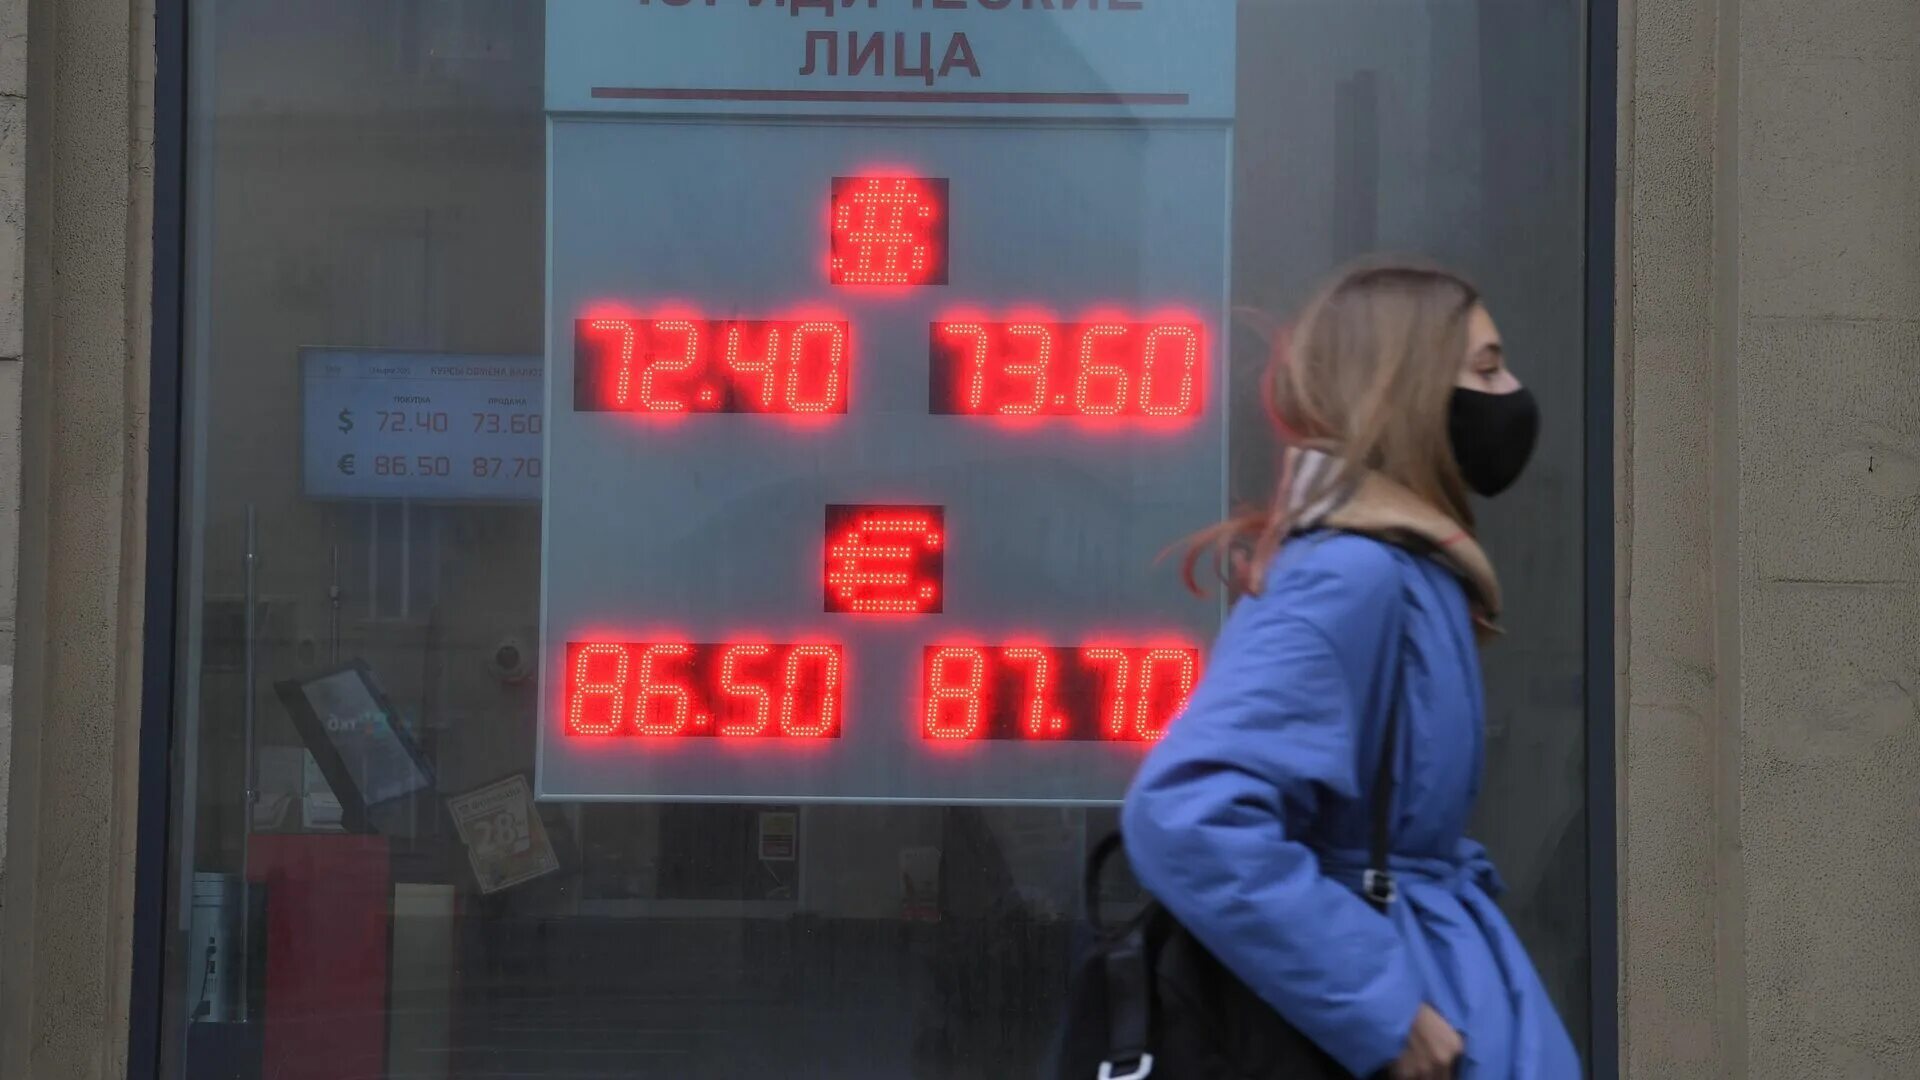 Продажа валюты гражданам. Новости банков. Валютное ограничение ЦБ. Рубль крепчает. Новости табло.